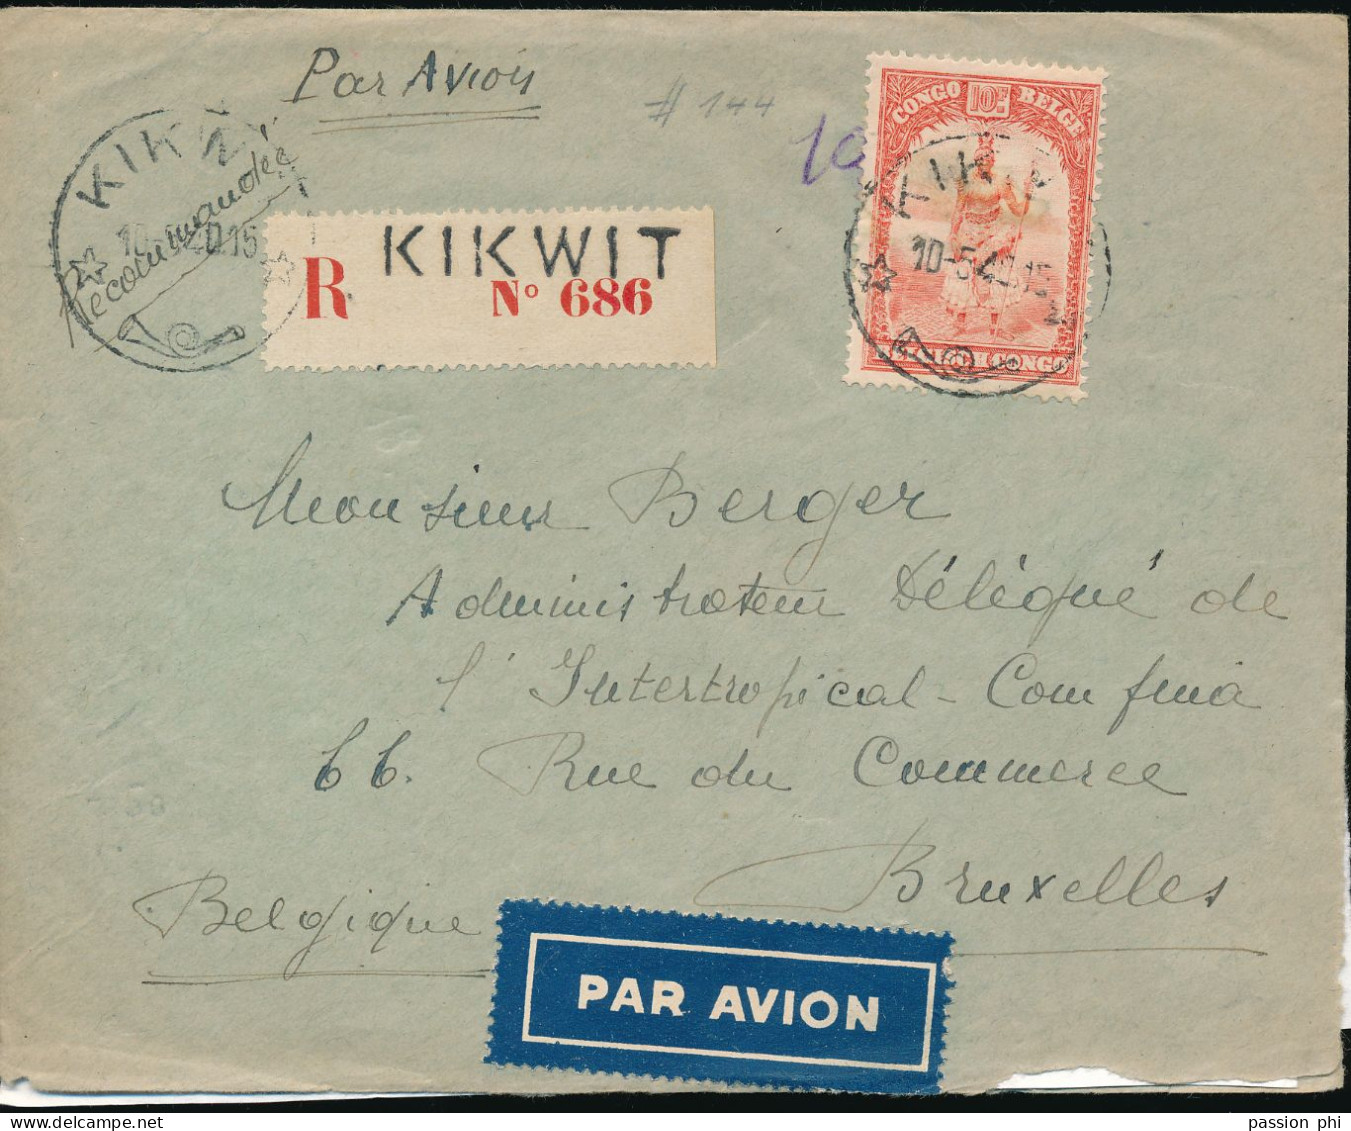 BELGIAN CONGO LETTRE RECOMMANDEE PAR AVION DE KIKWIT 10.05.40 (JOUR DE L'INVASION EN BELGIQUE) VERS BRUXELLES - Brieven En Documenten